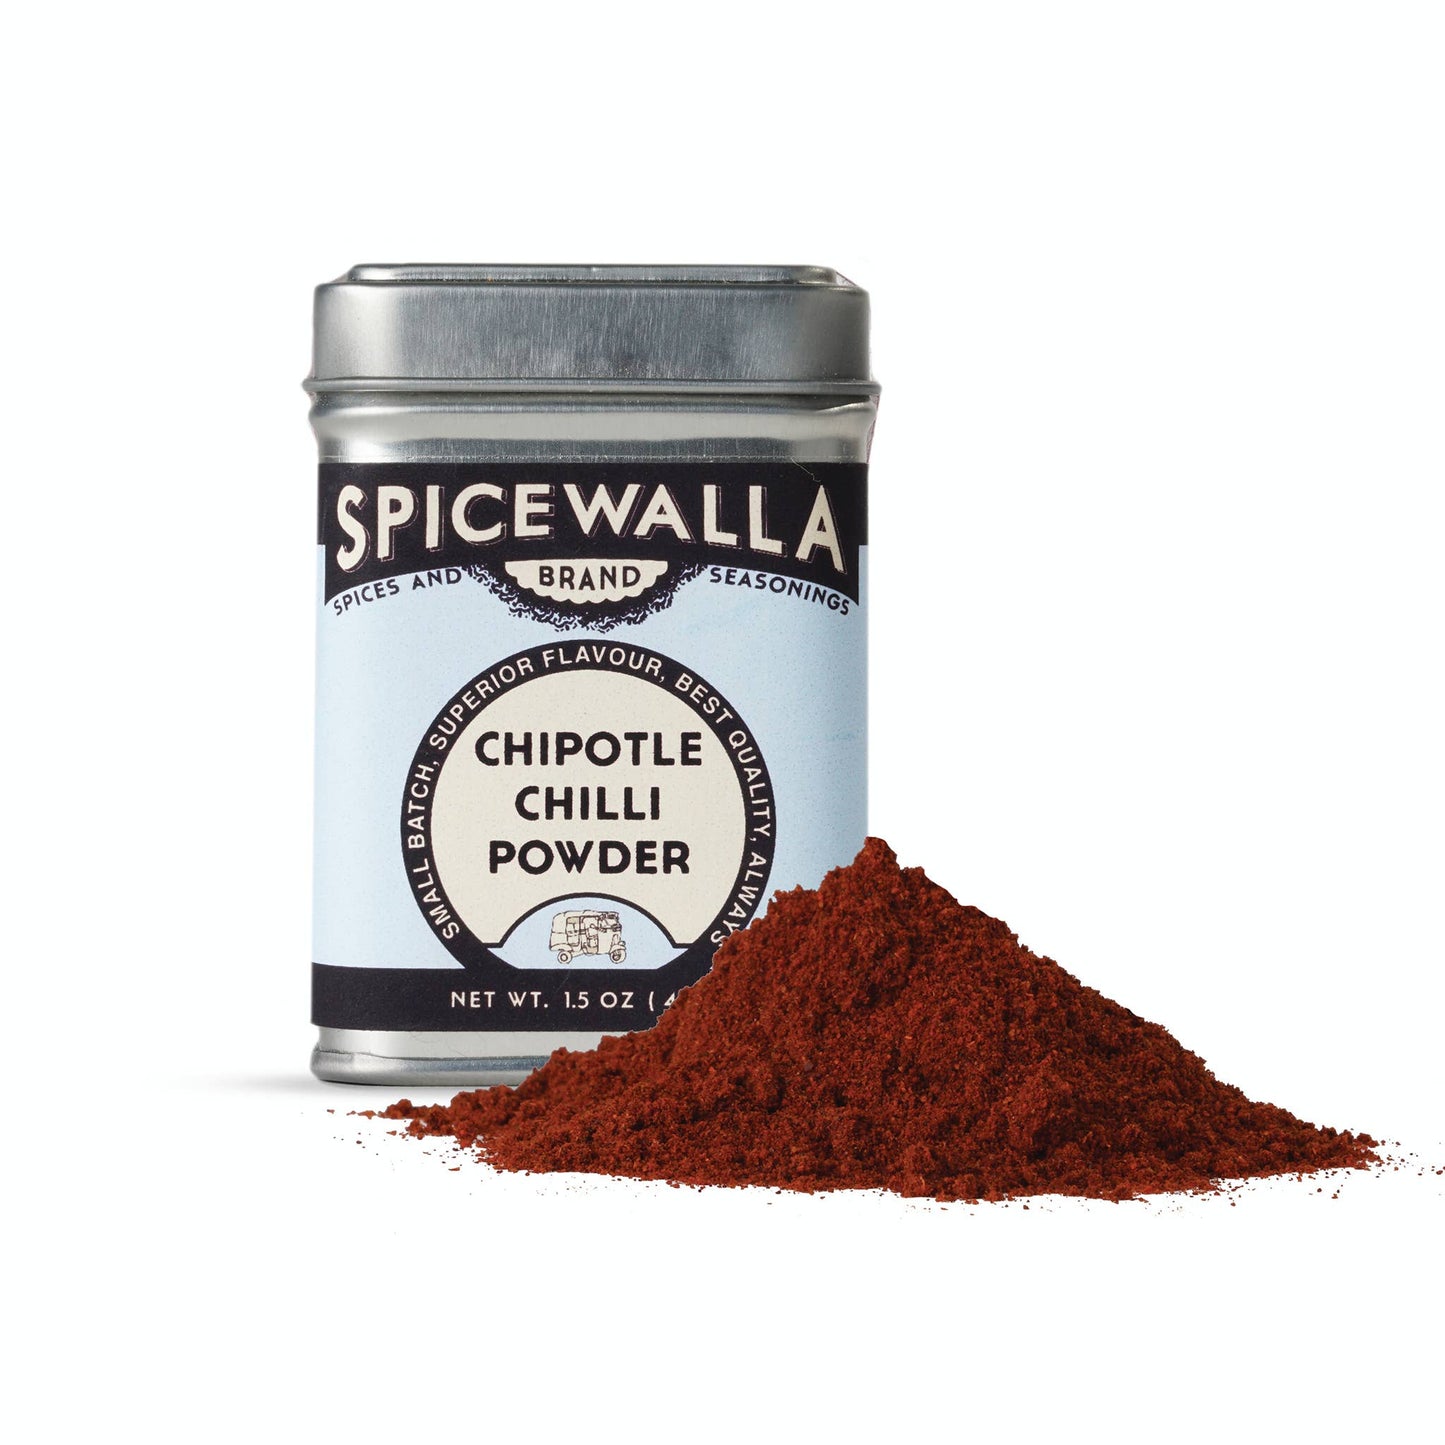 Chipotle Chilli Powder